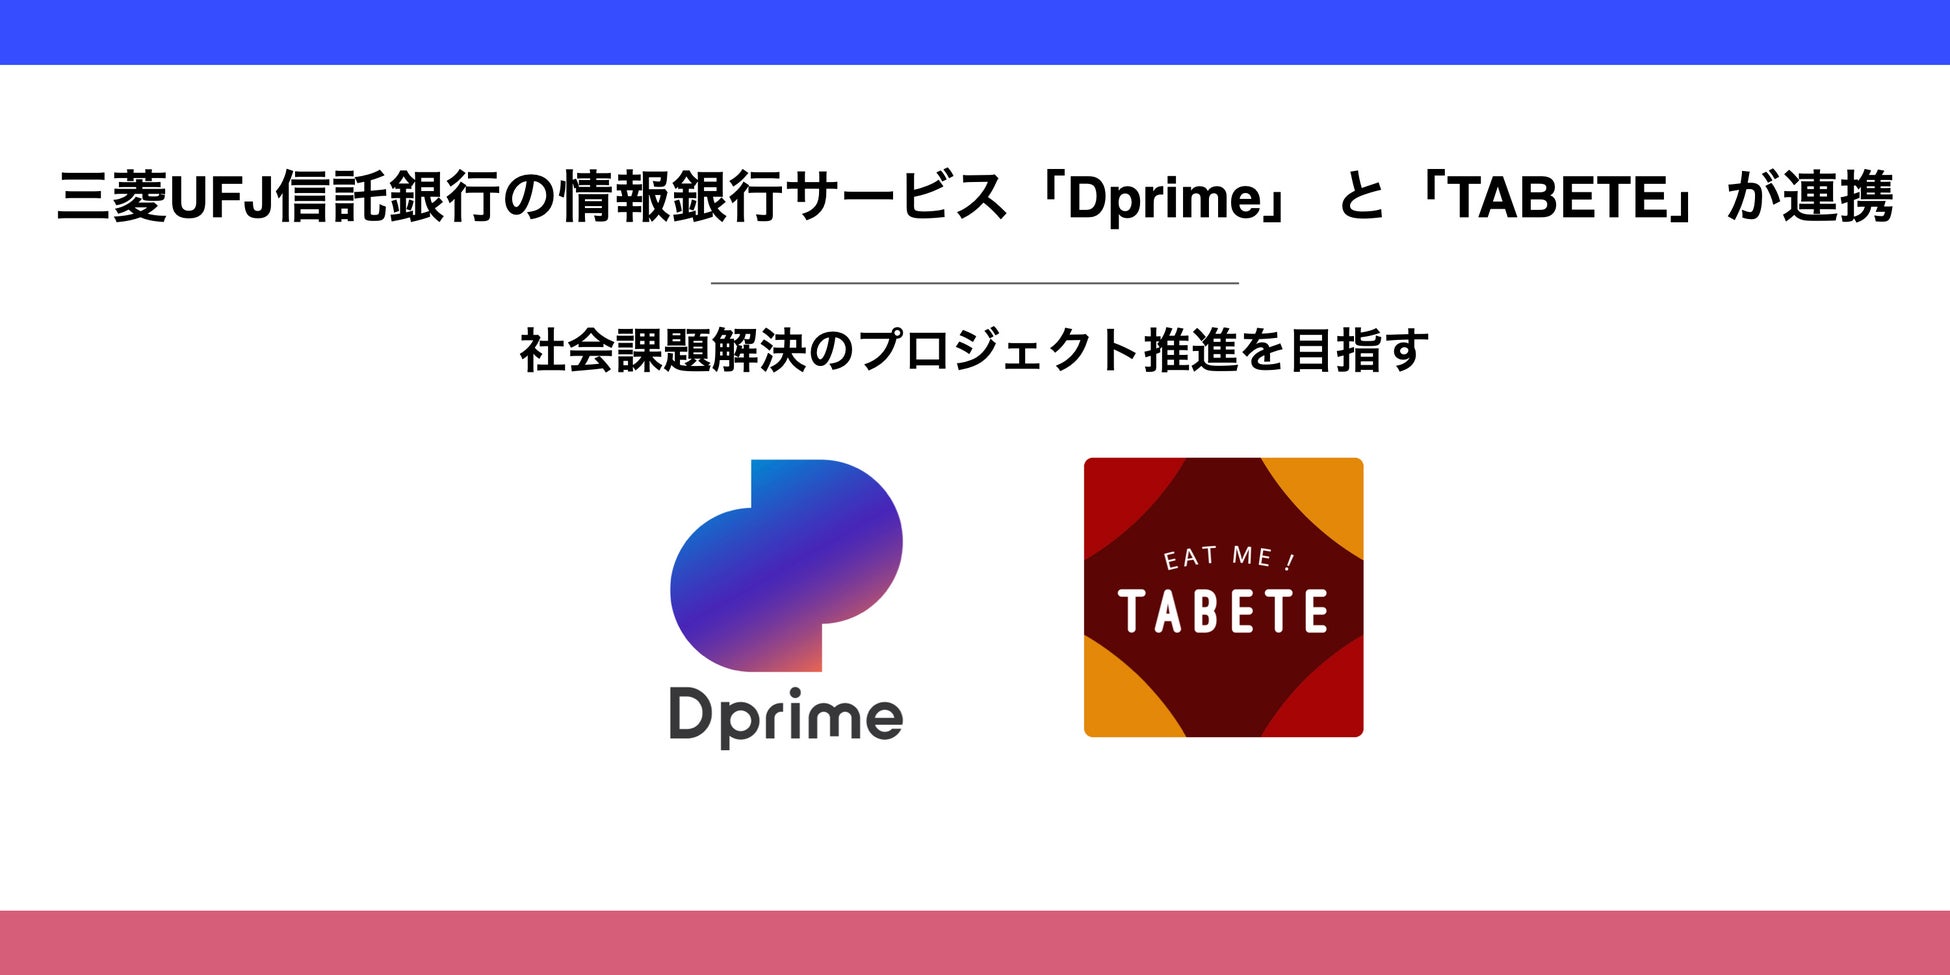 三菱UFJ信託銀行の情報銀行サービス「Dprime」と「TABETE」が連携。社会課題解決のプロジェクト推進に向けたキャンペーンを10月20日(木)から開始。のサブ画像1